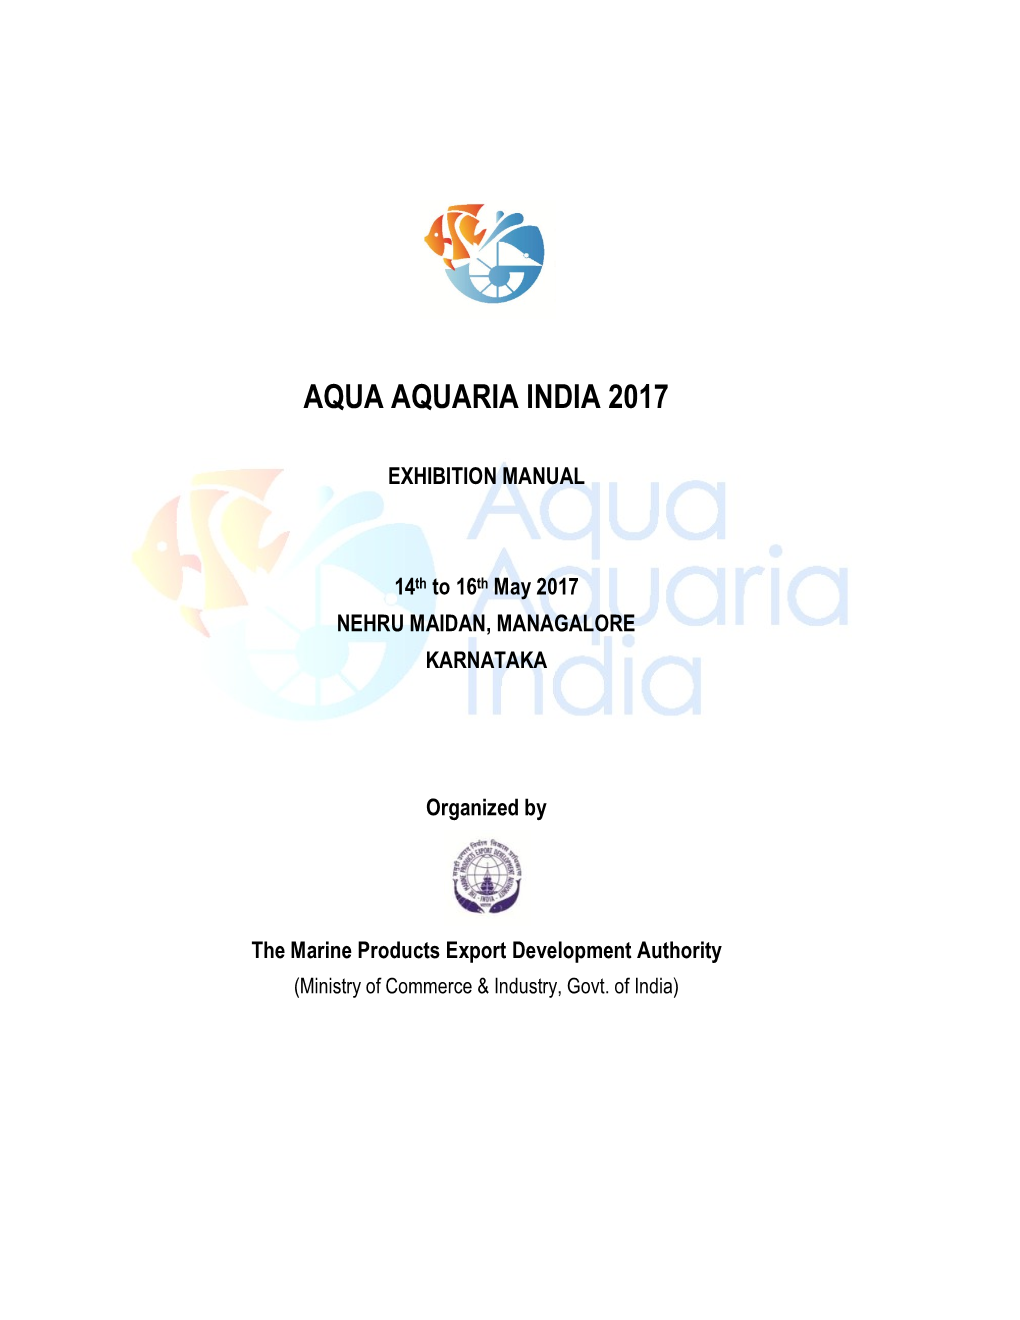 Aqua Aquaria India 2017